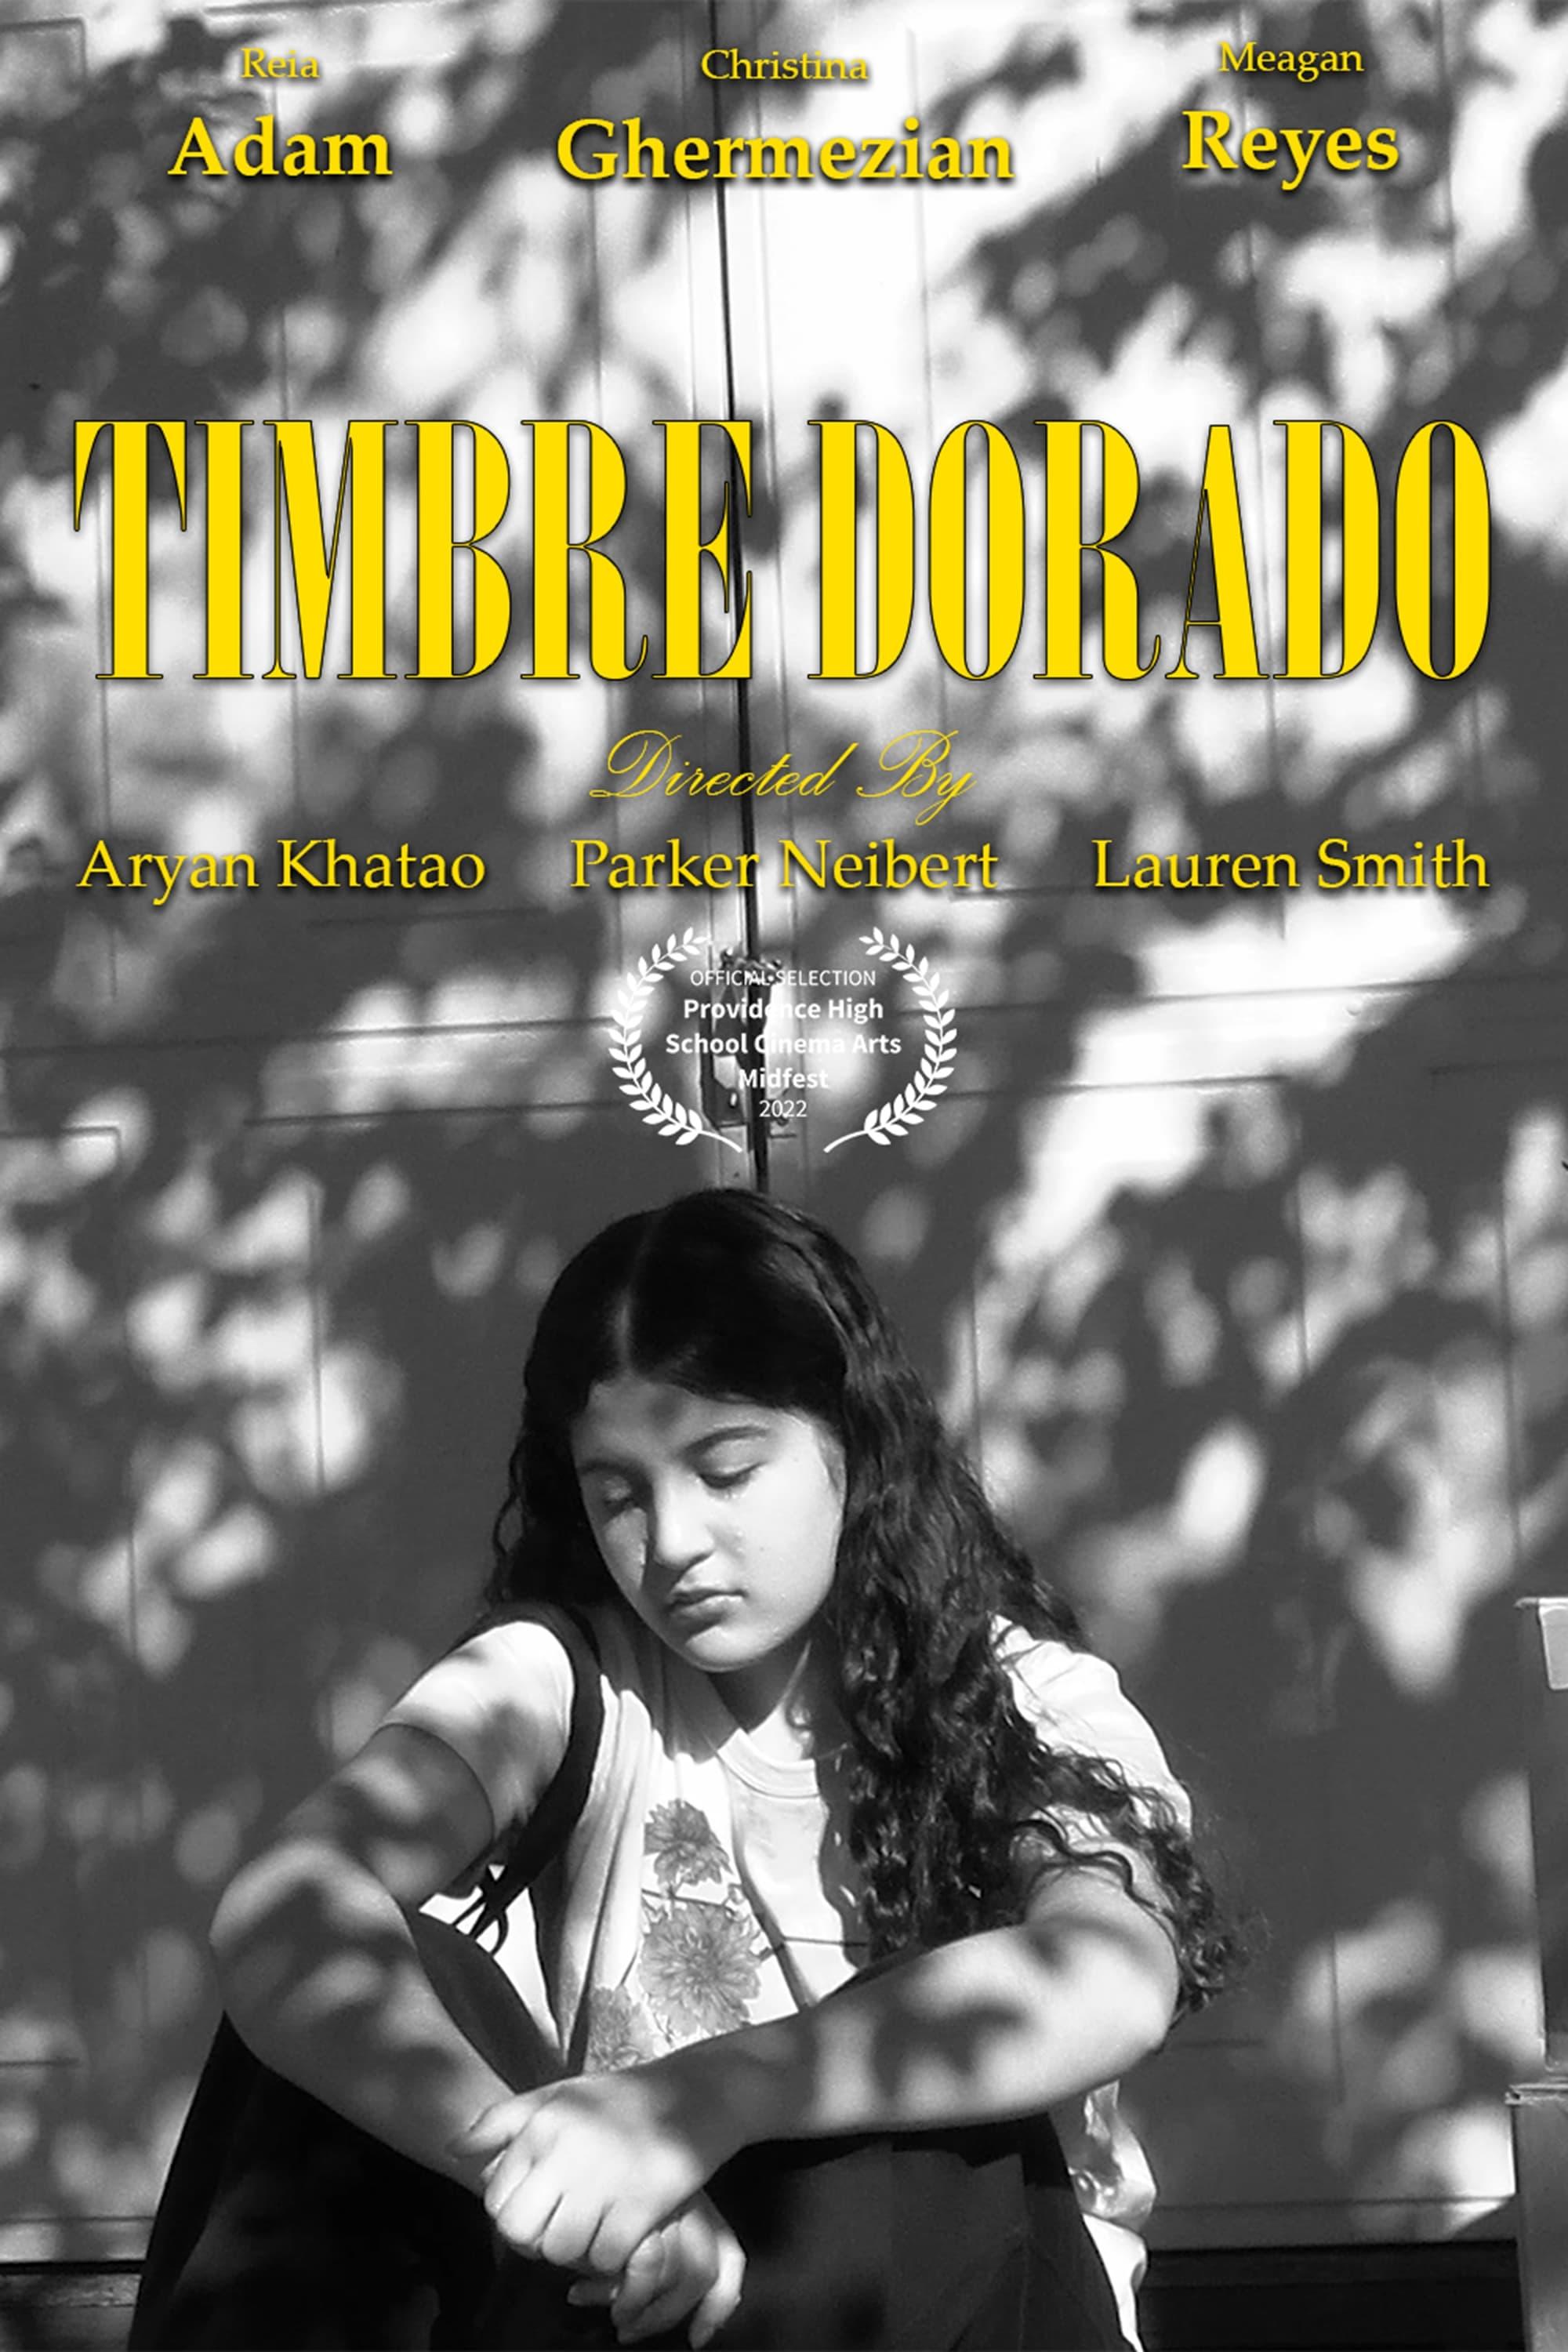 Timbre Dorado poster